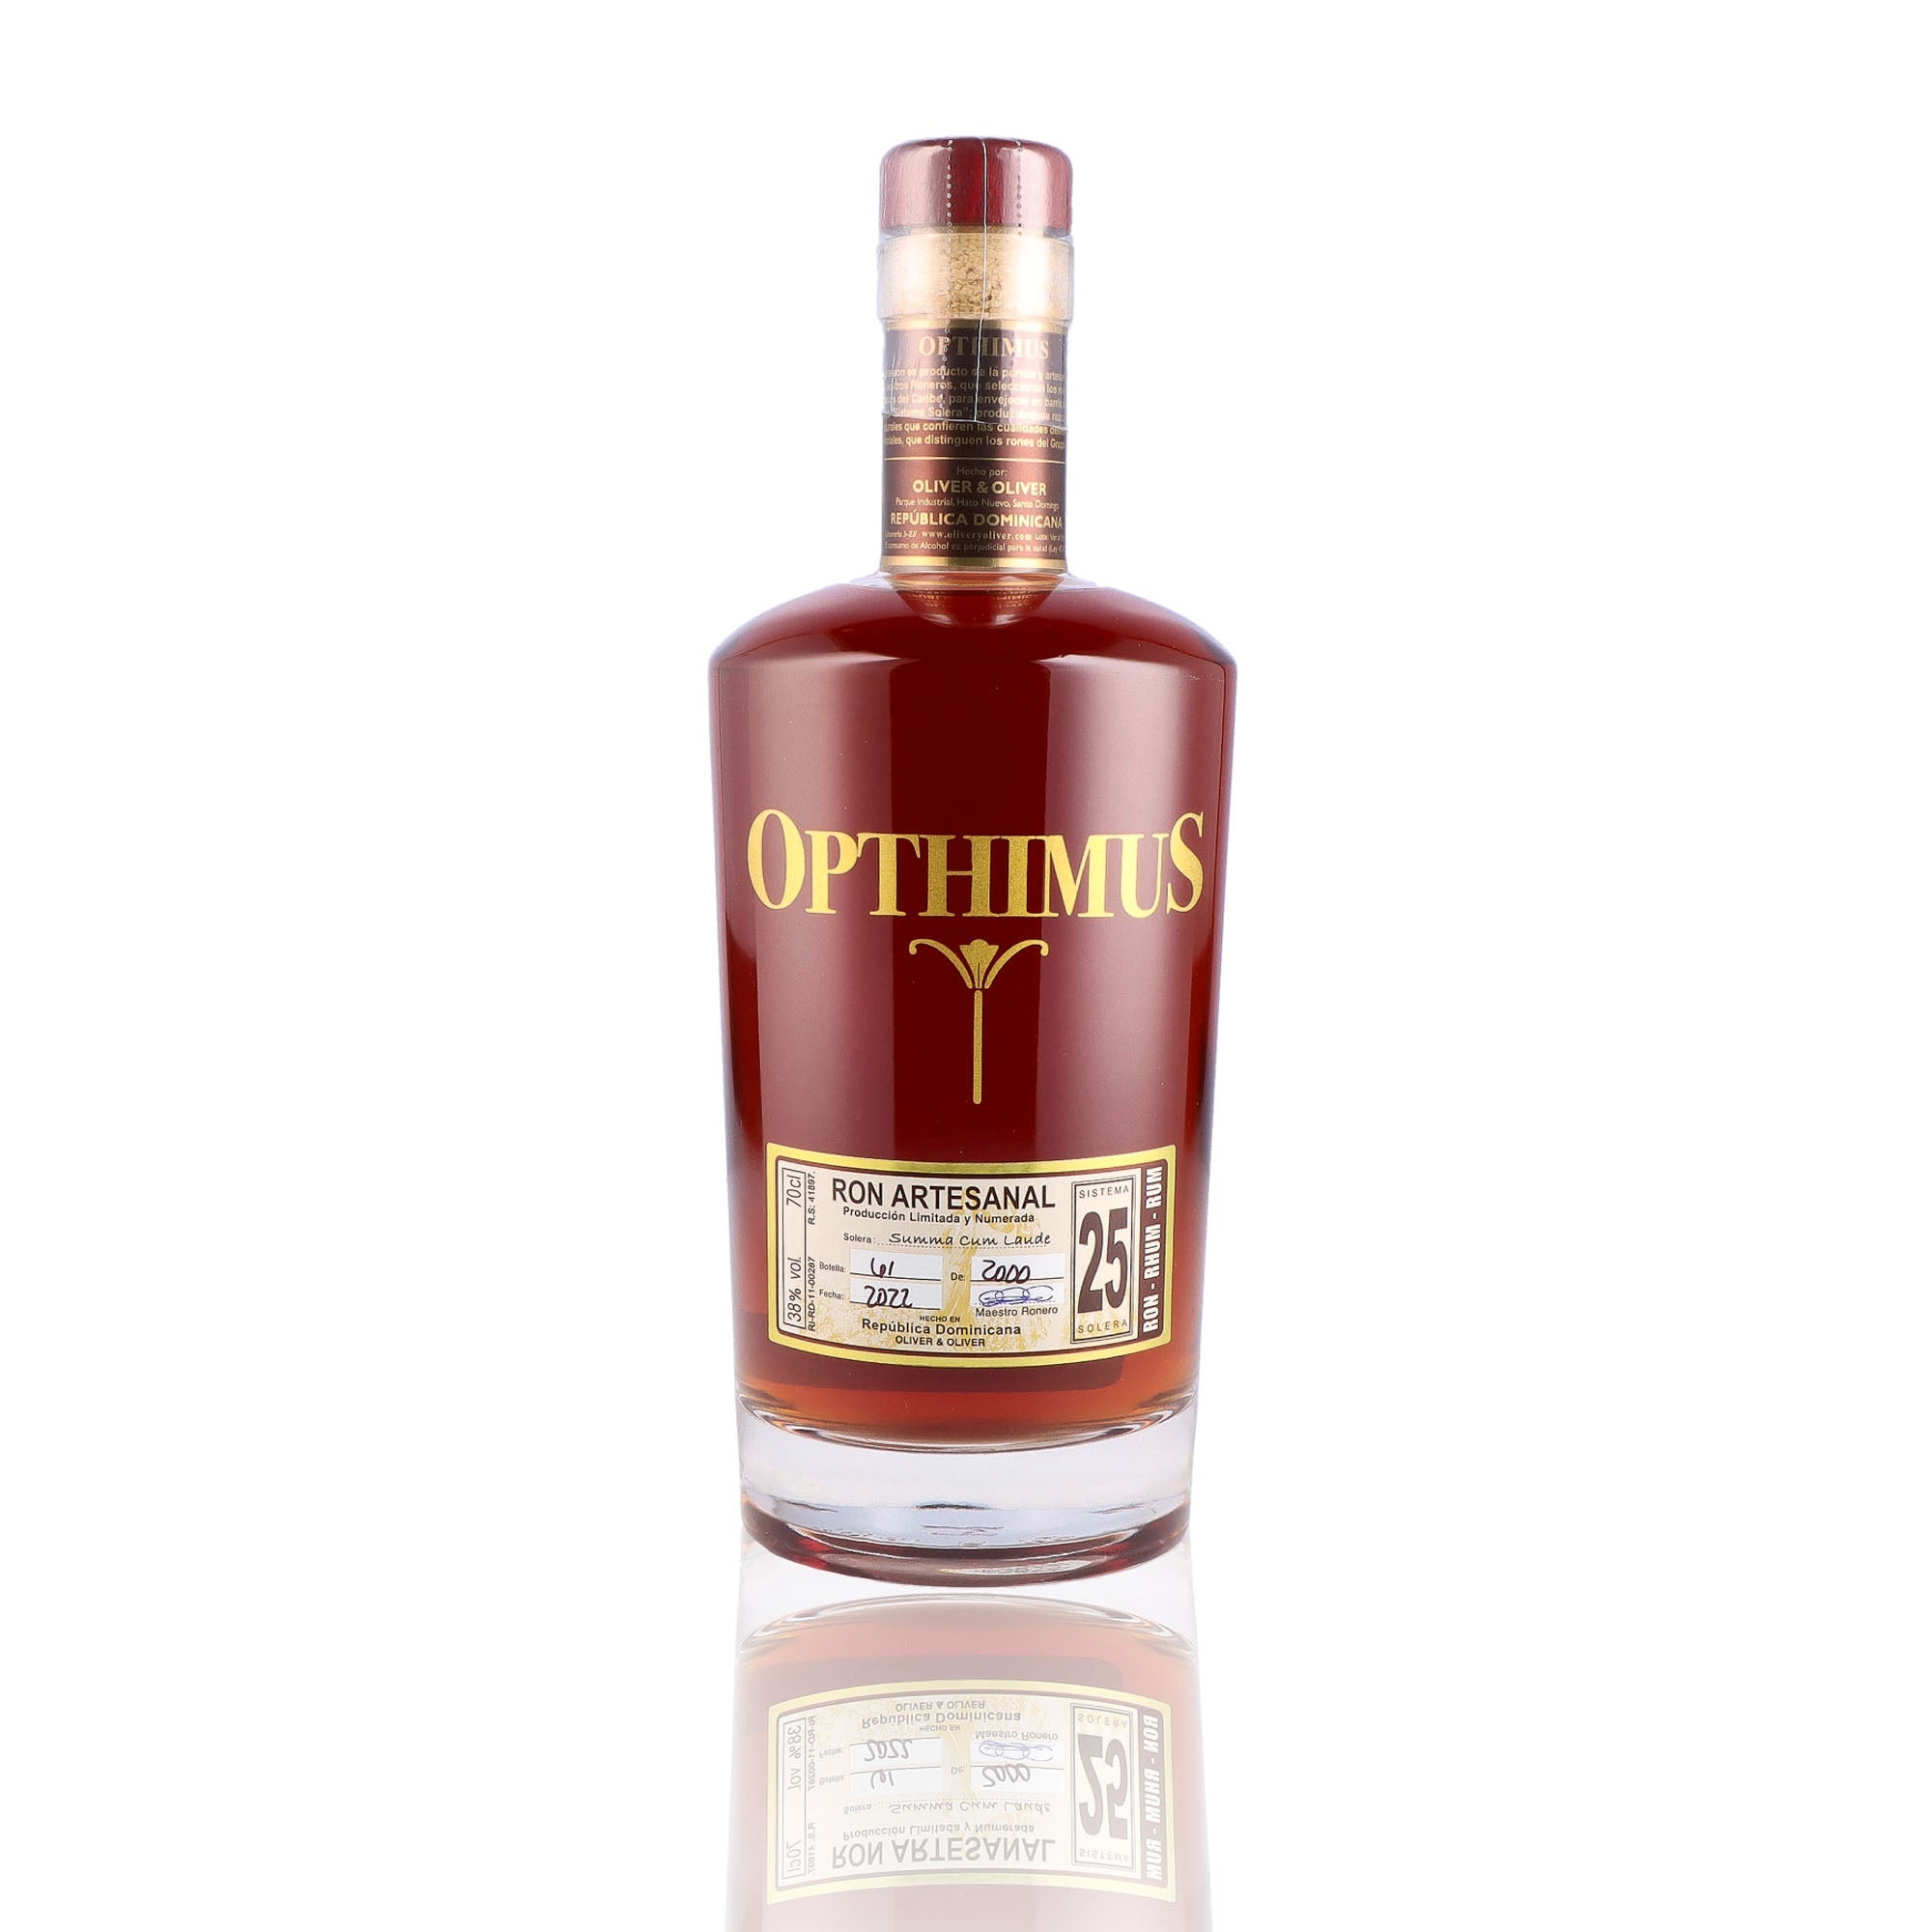 Une bouteille de rhum vieux, de la marque Opthimus, 25 ans d'âge.